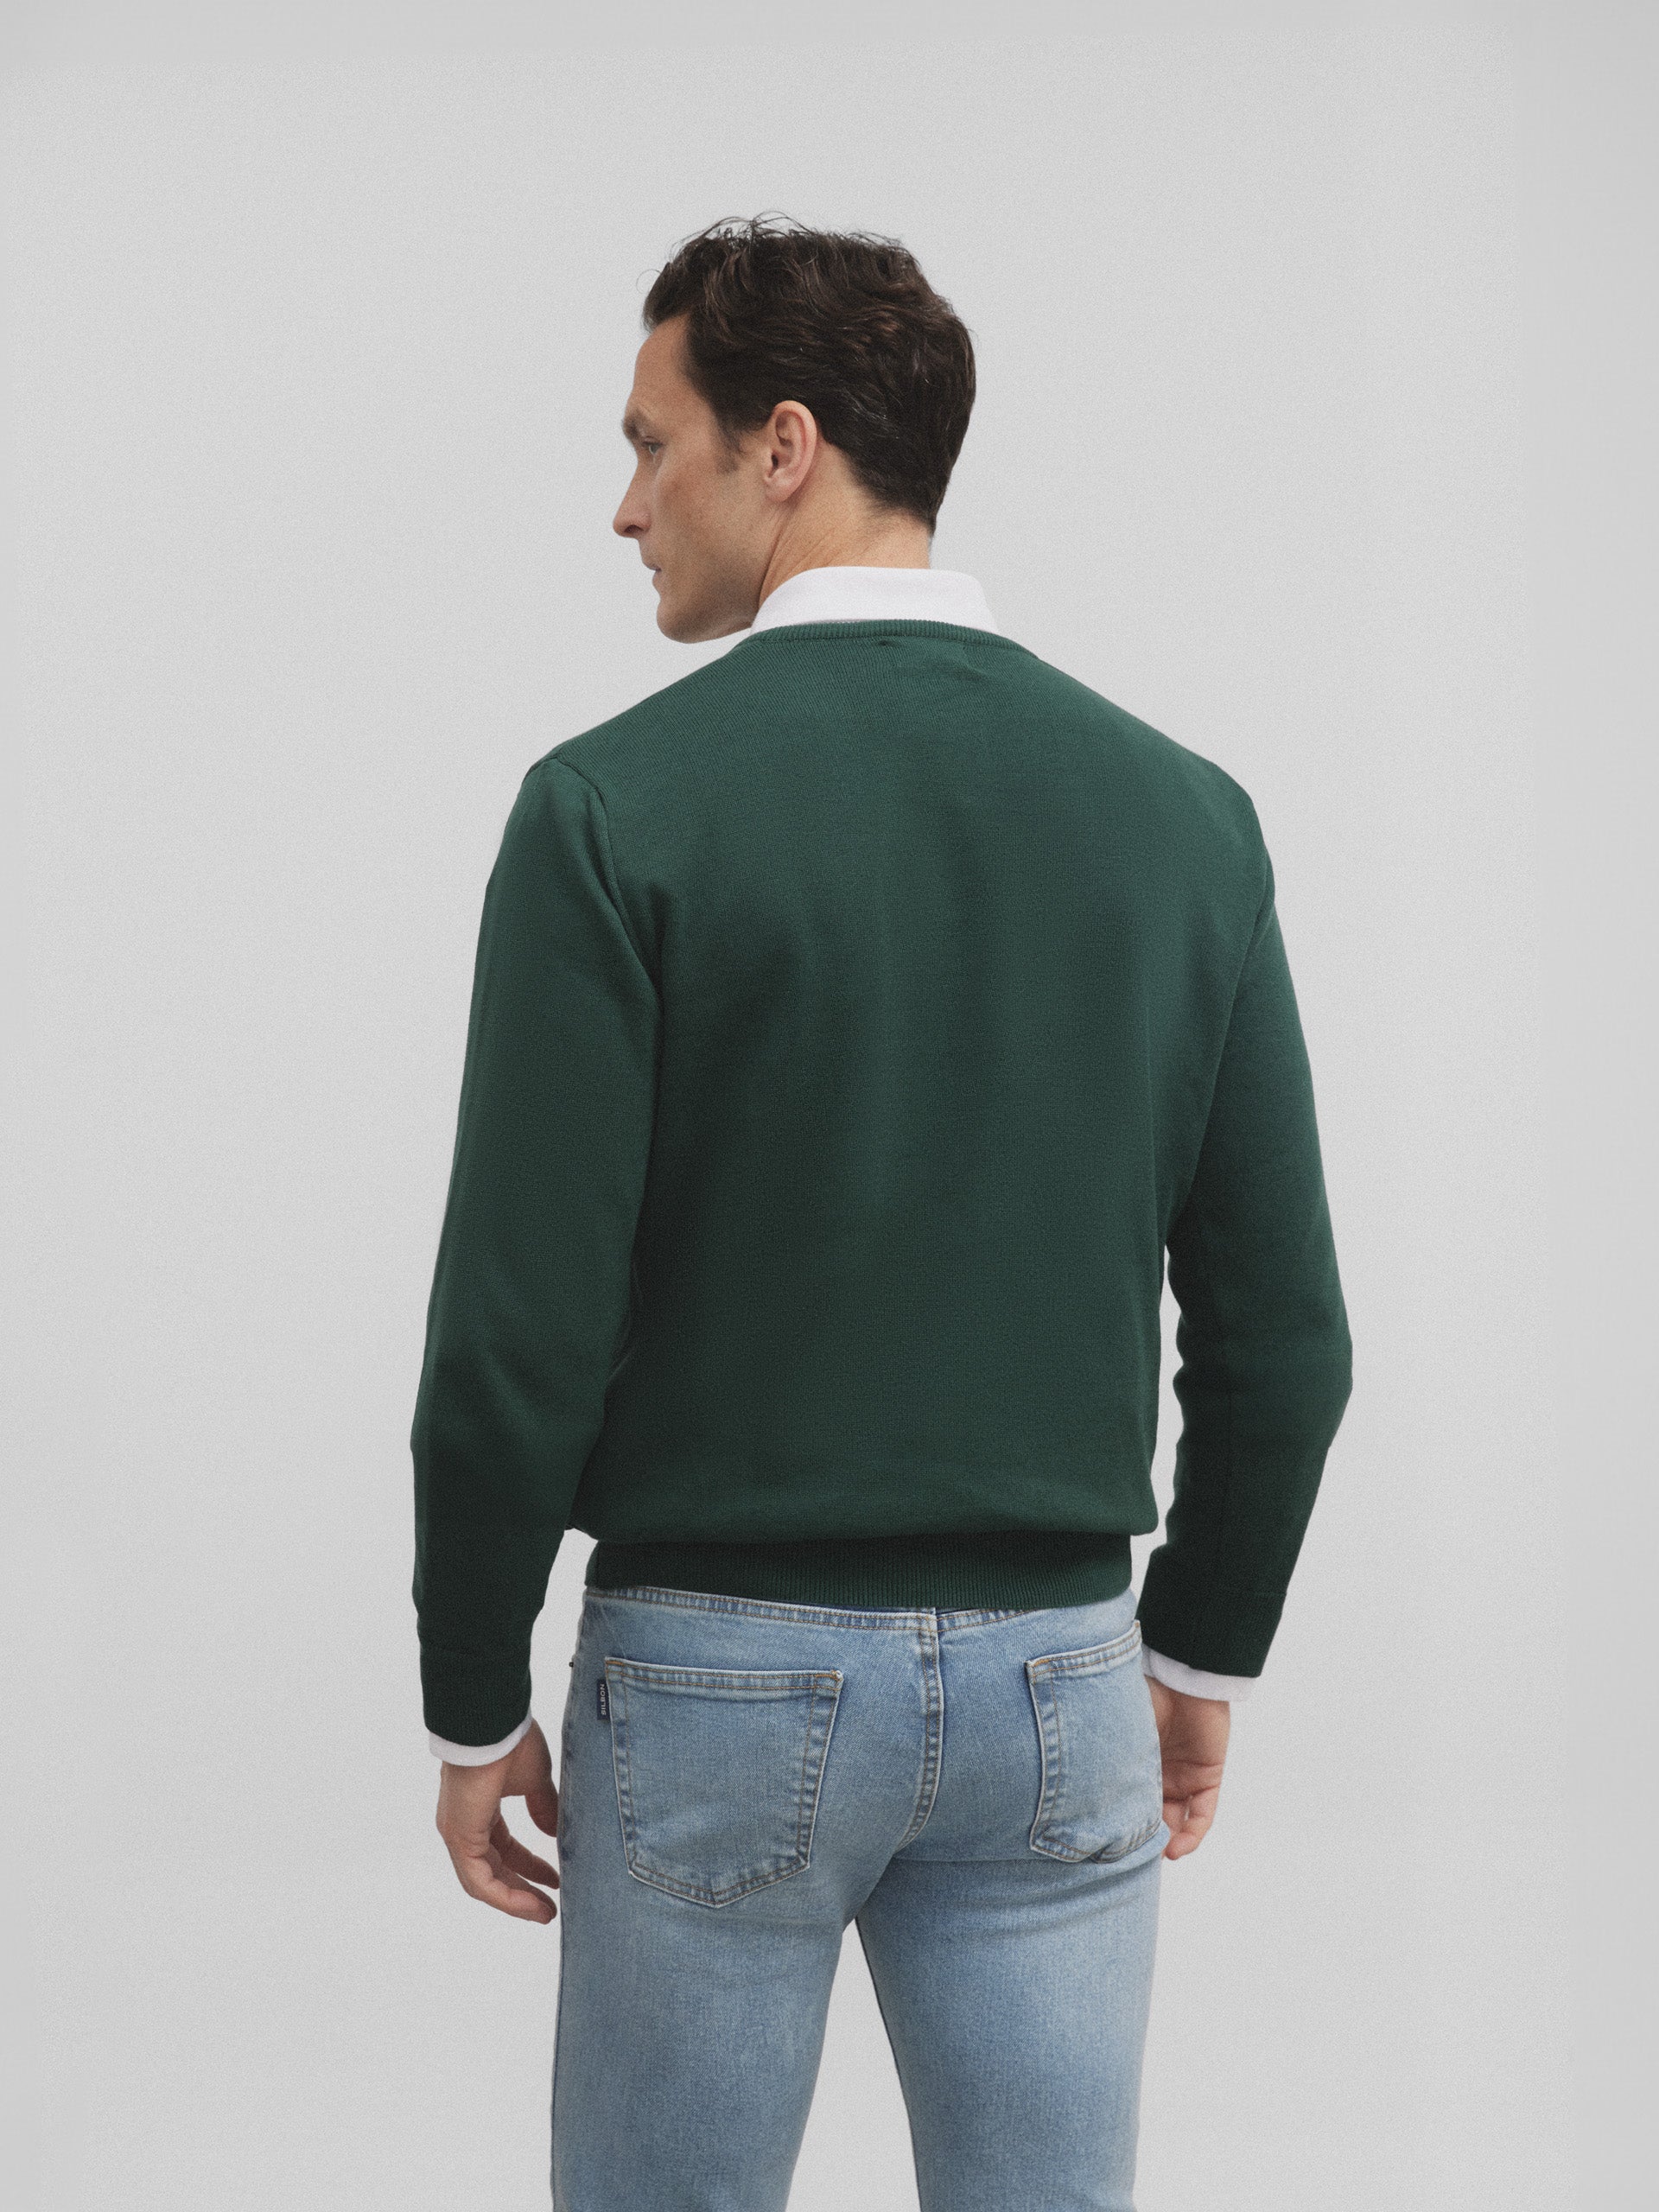 Classic green retro V-neck sweater